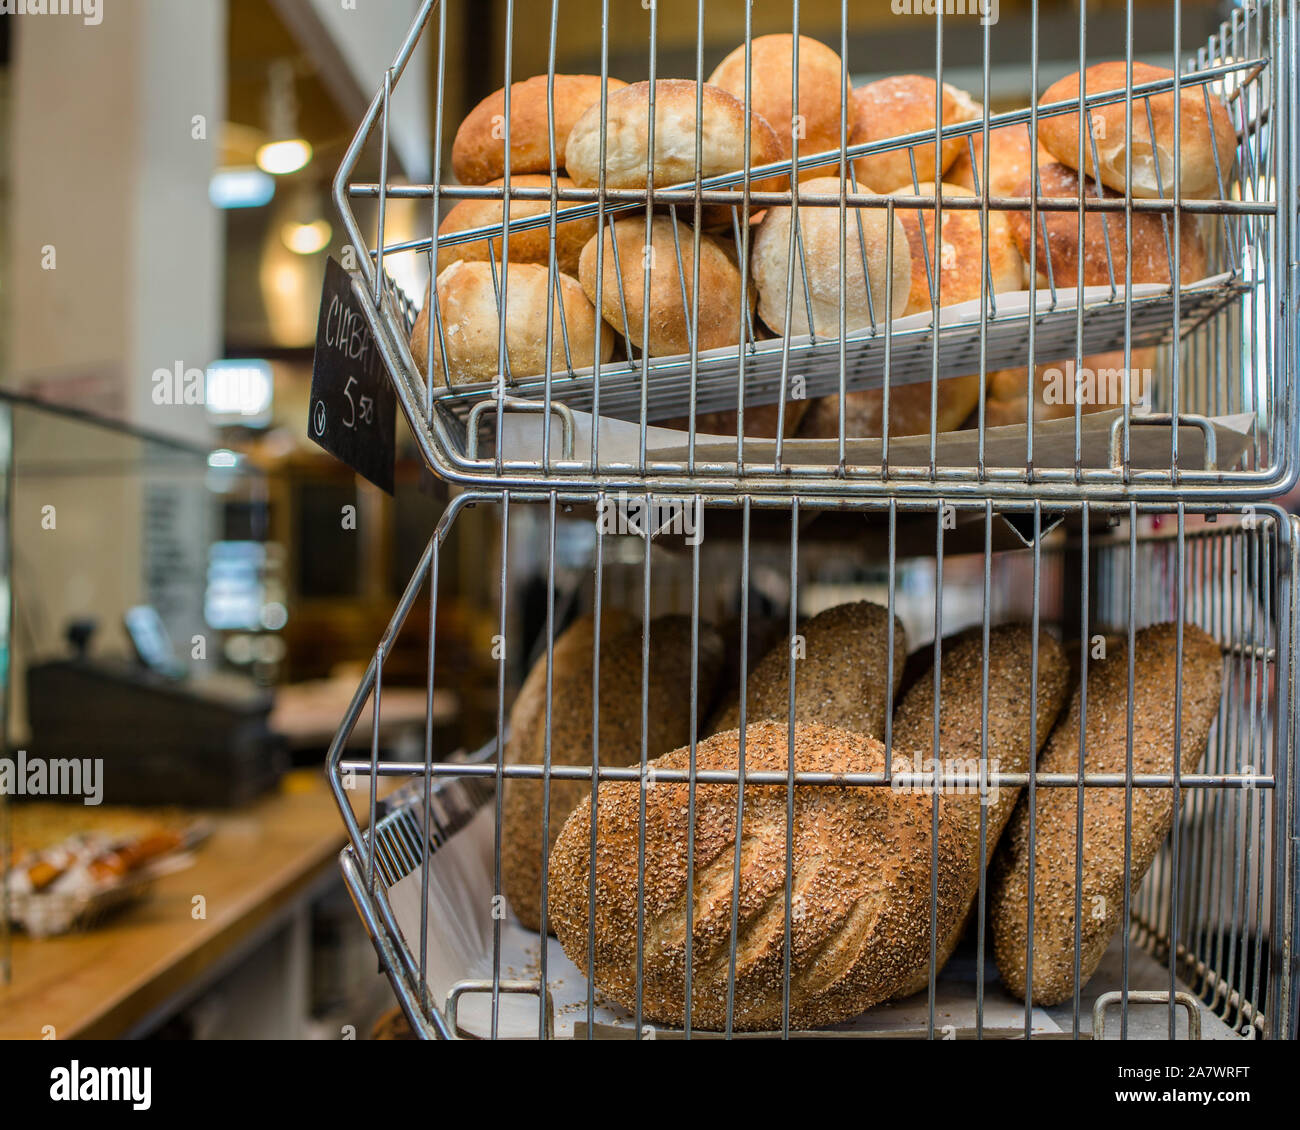 Vue rapprochée de racks de pains dans un magasin de détail Banque D'Images